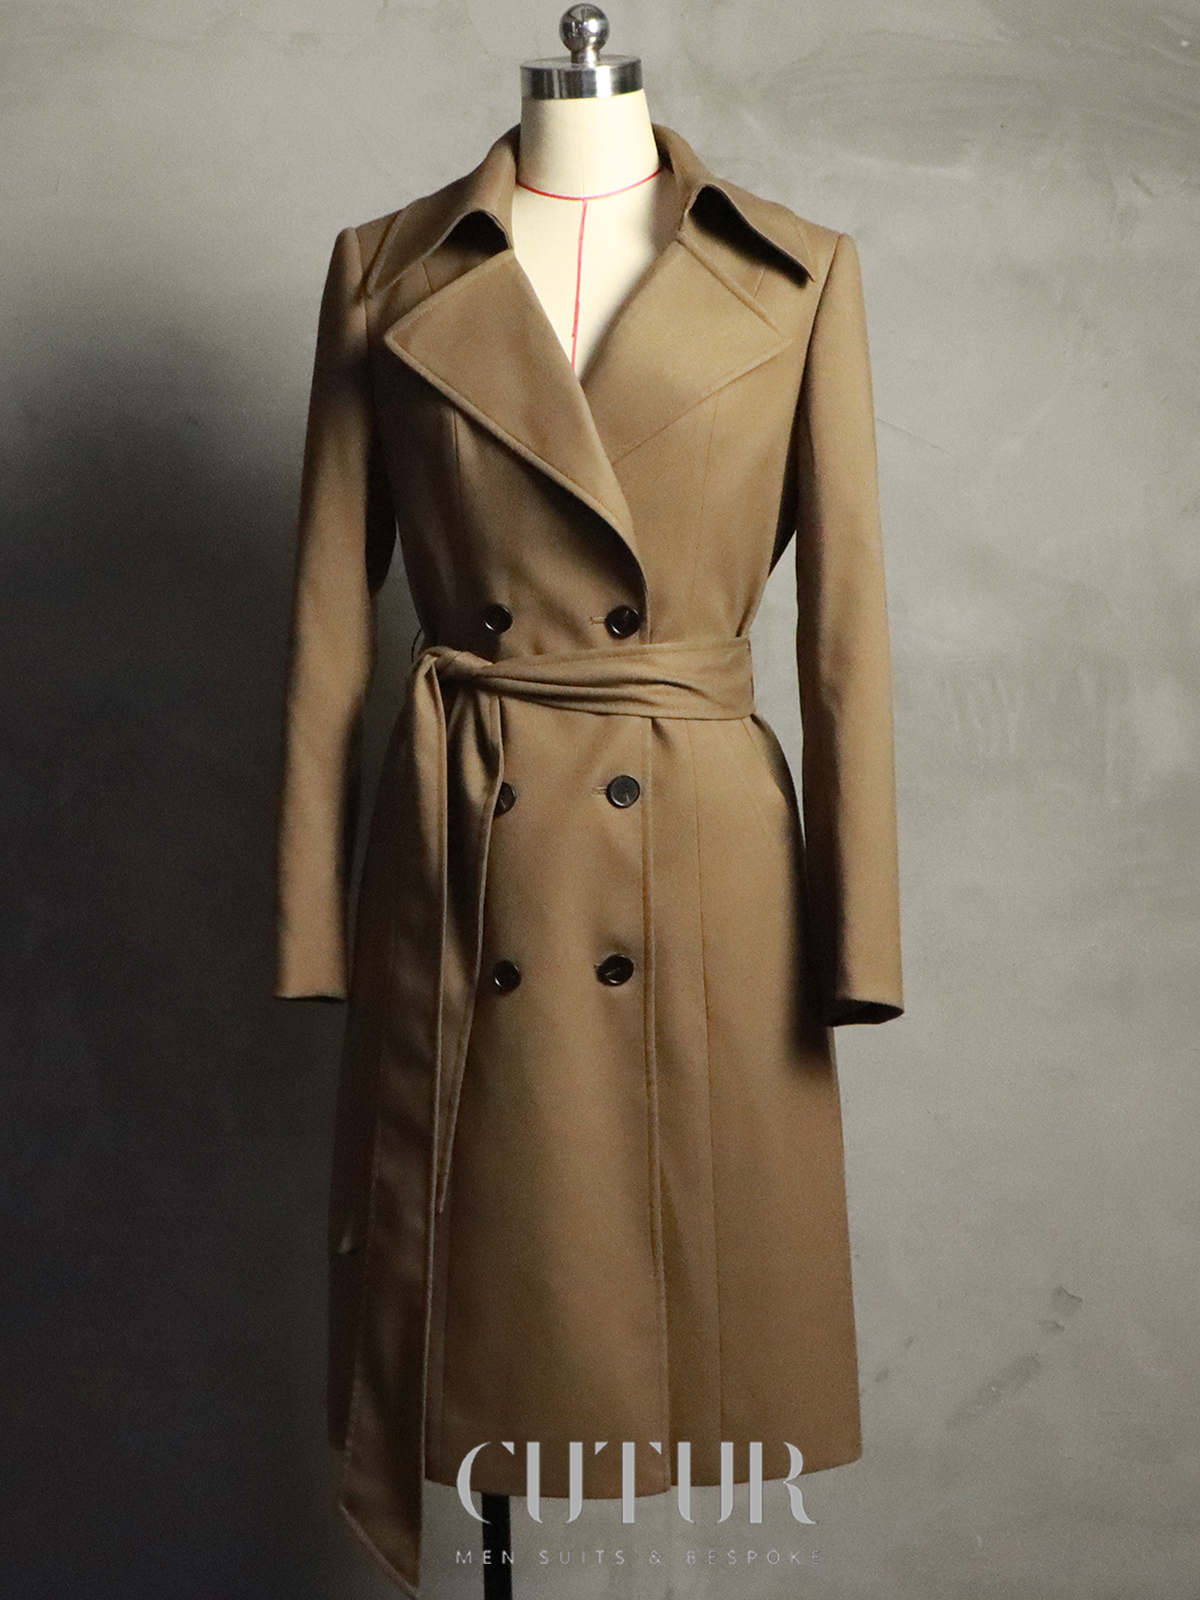 Windbreaker Style Women'sOvercoat